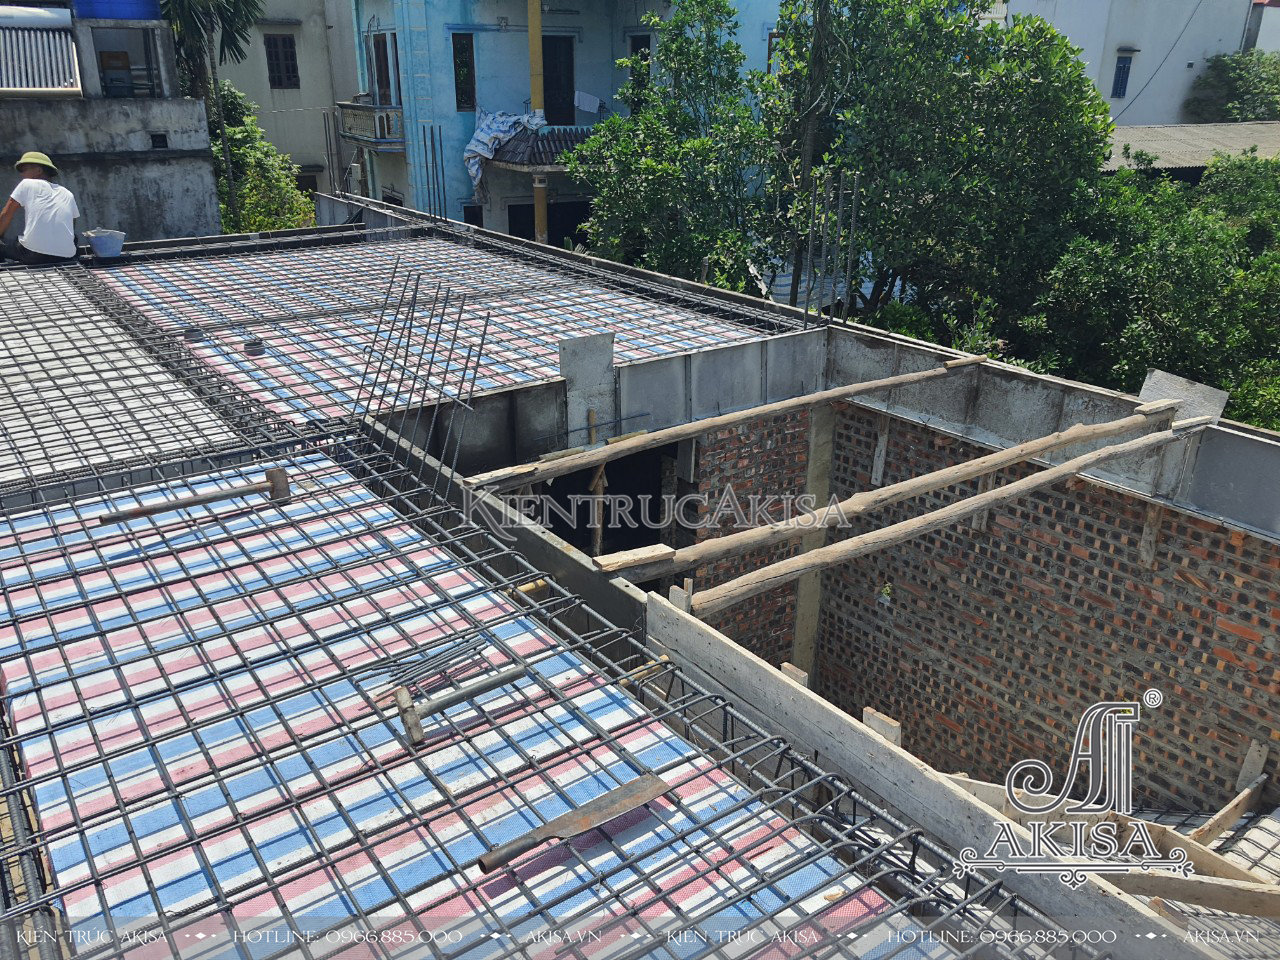 hình ảnh thi công xây dựng biệt thự gia đình 3 tầng hiện đại tại Bắc Ninh